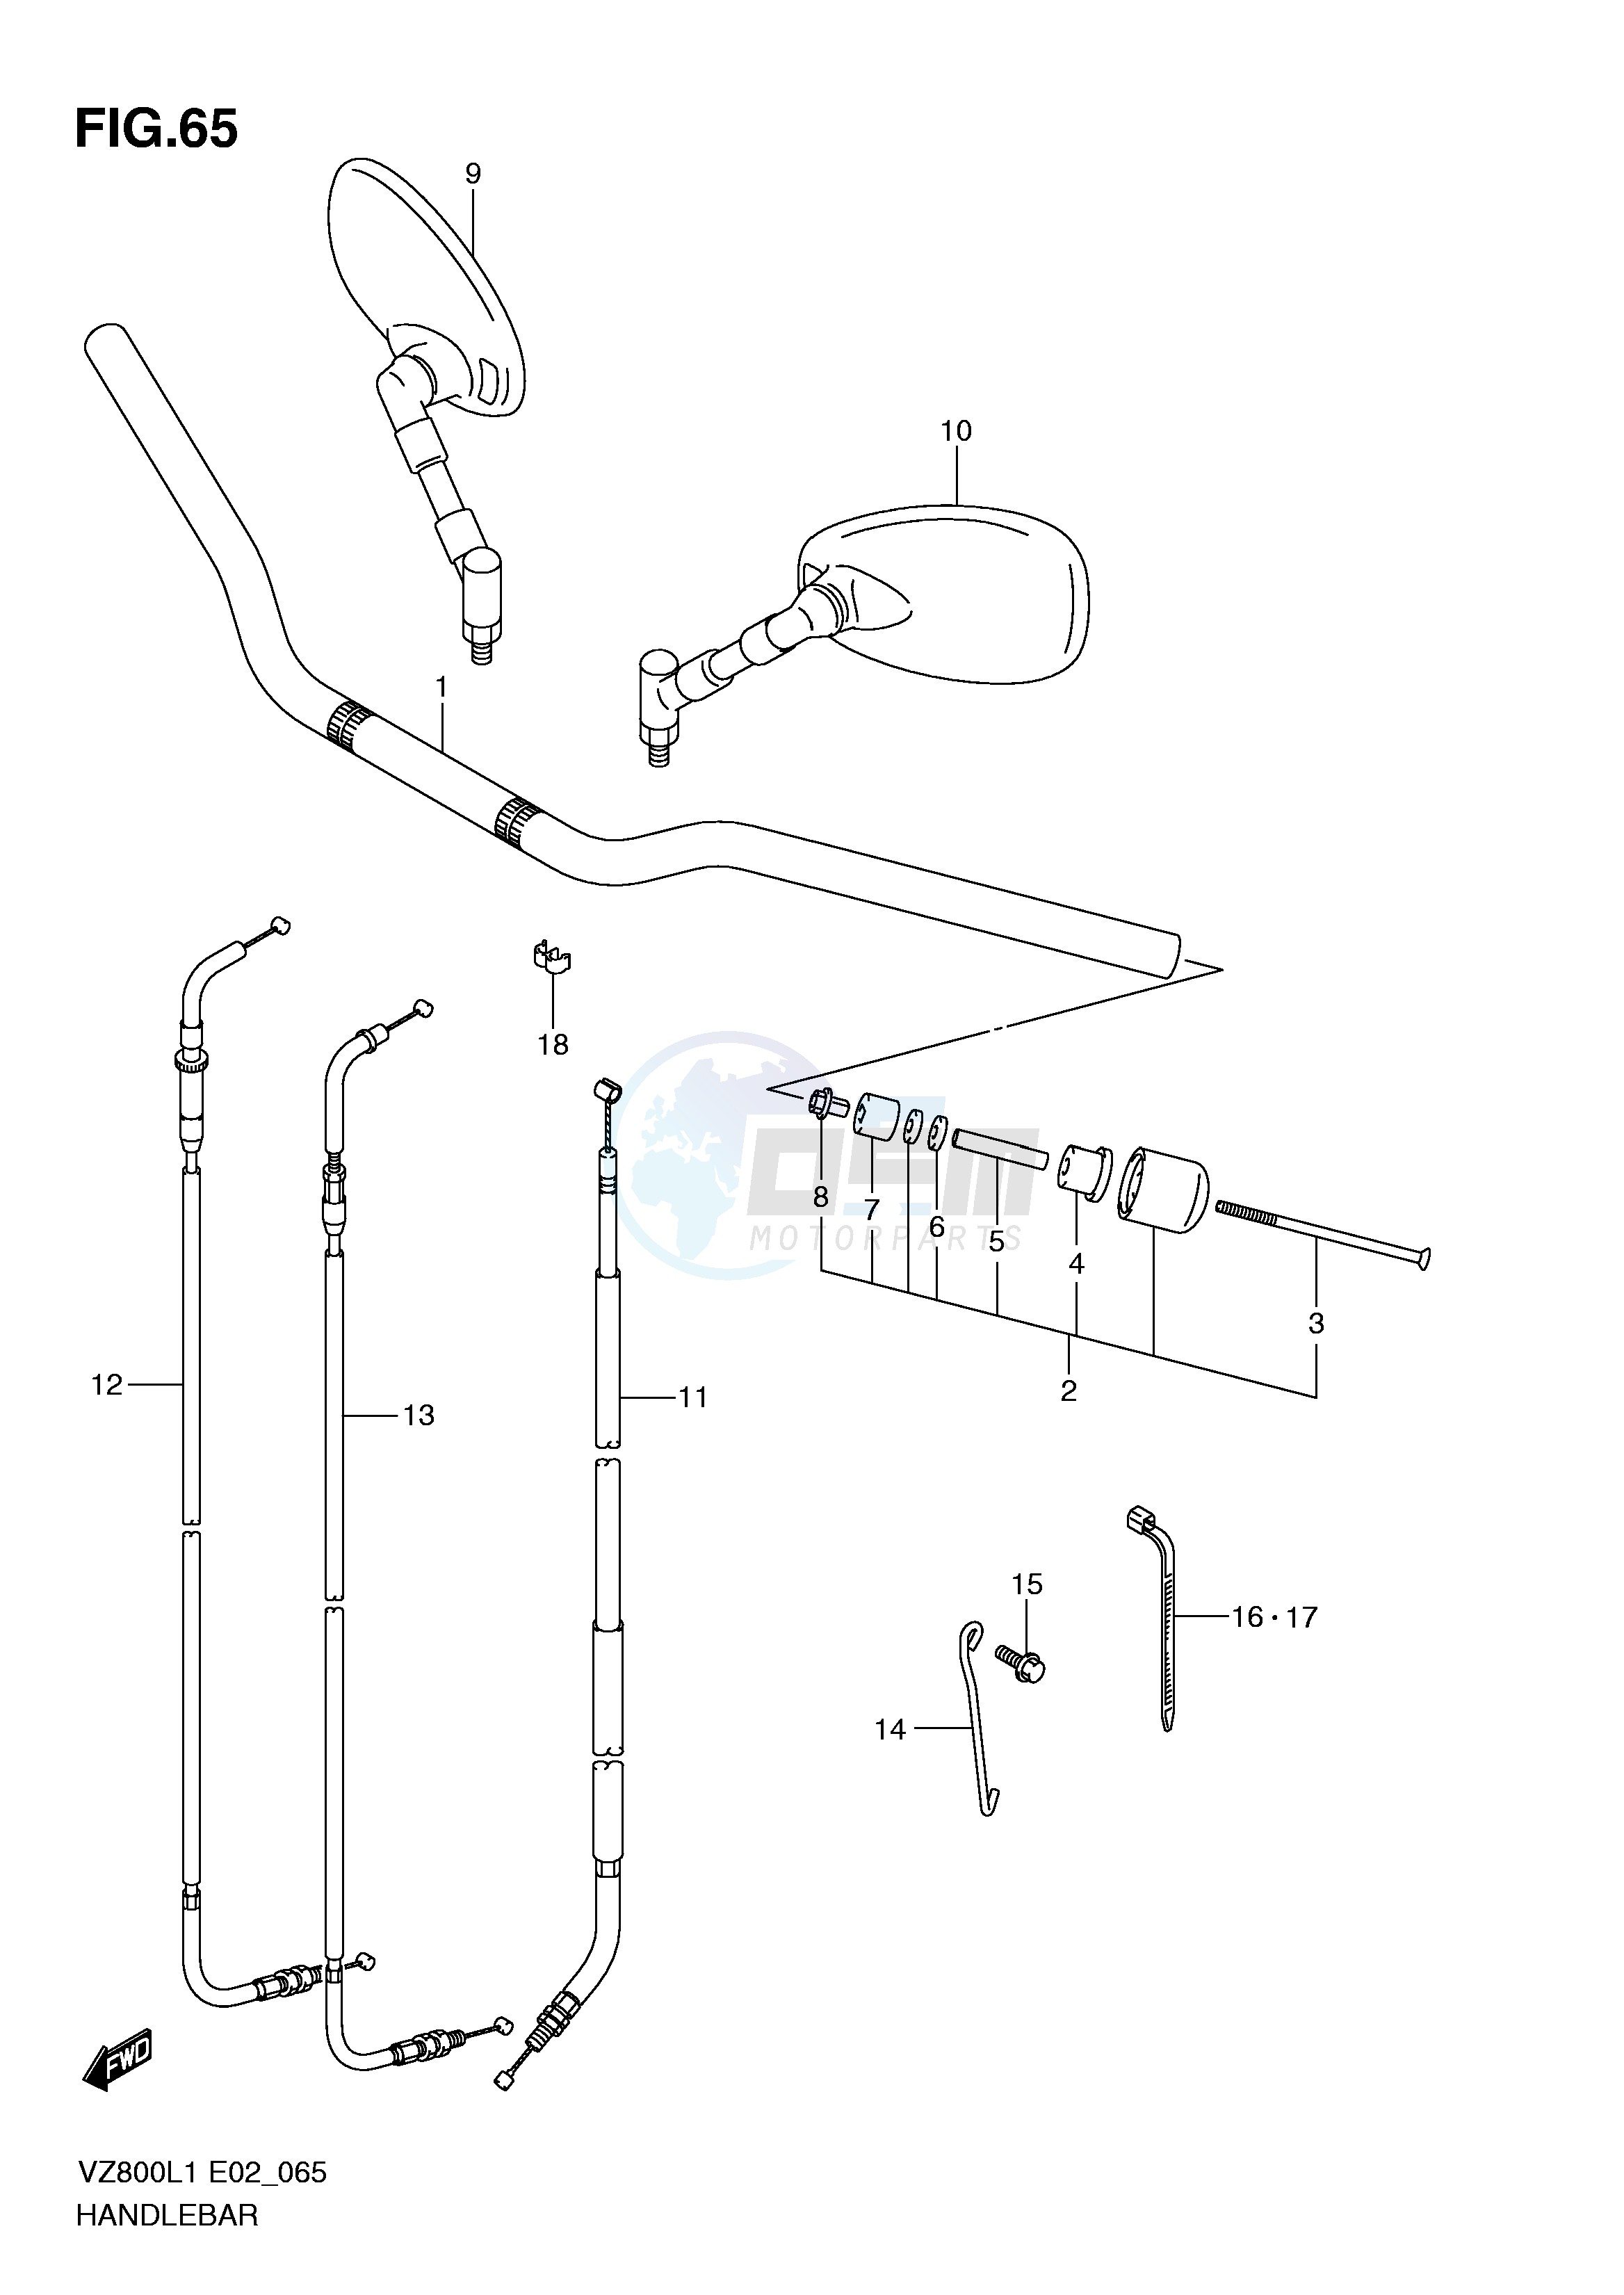 HANDLEBAR (VZ800UEL1 E19) blueprint